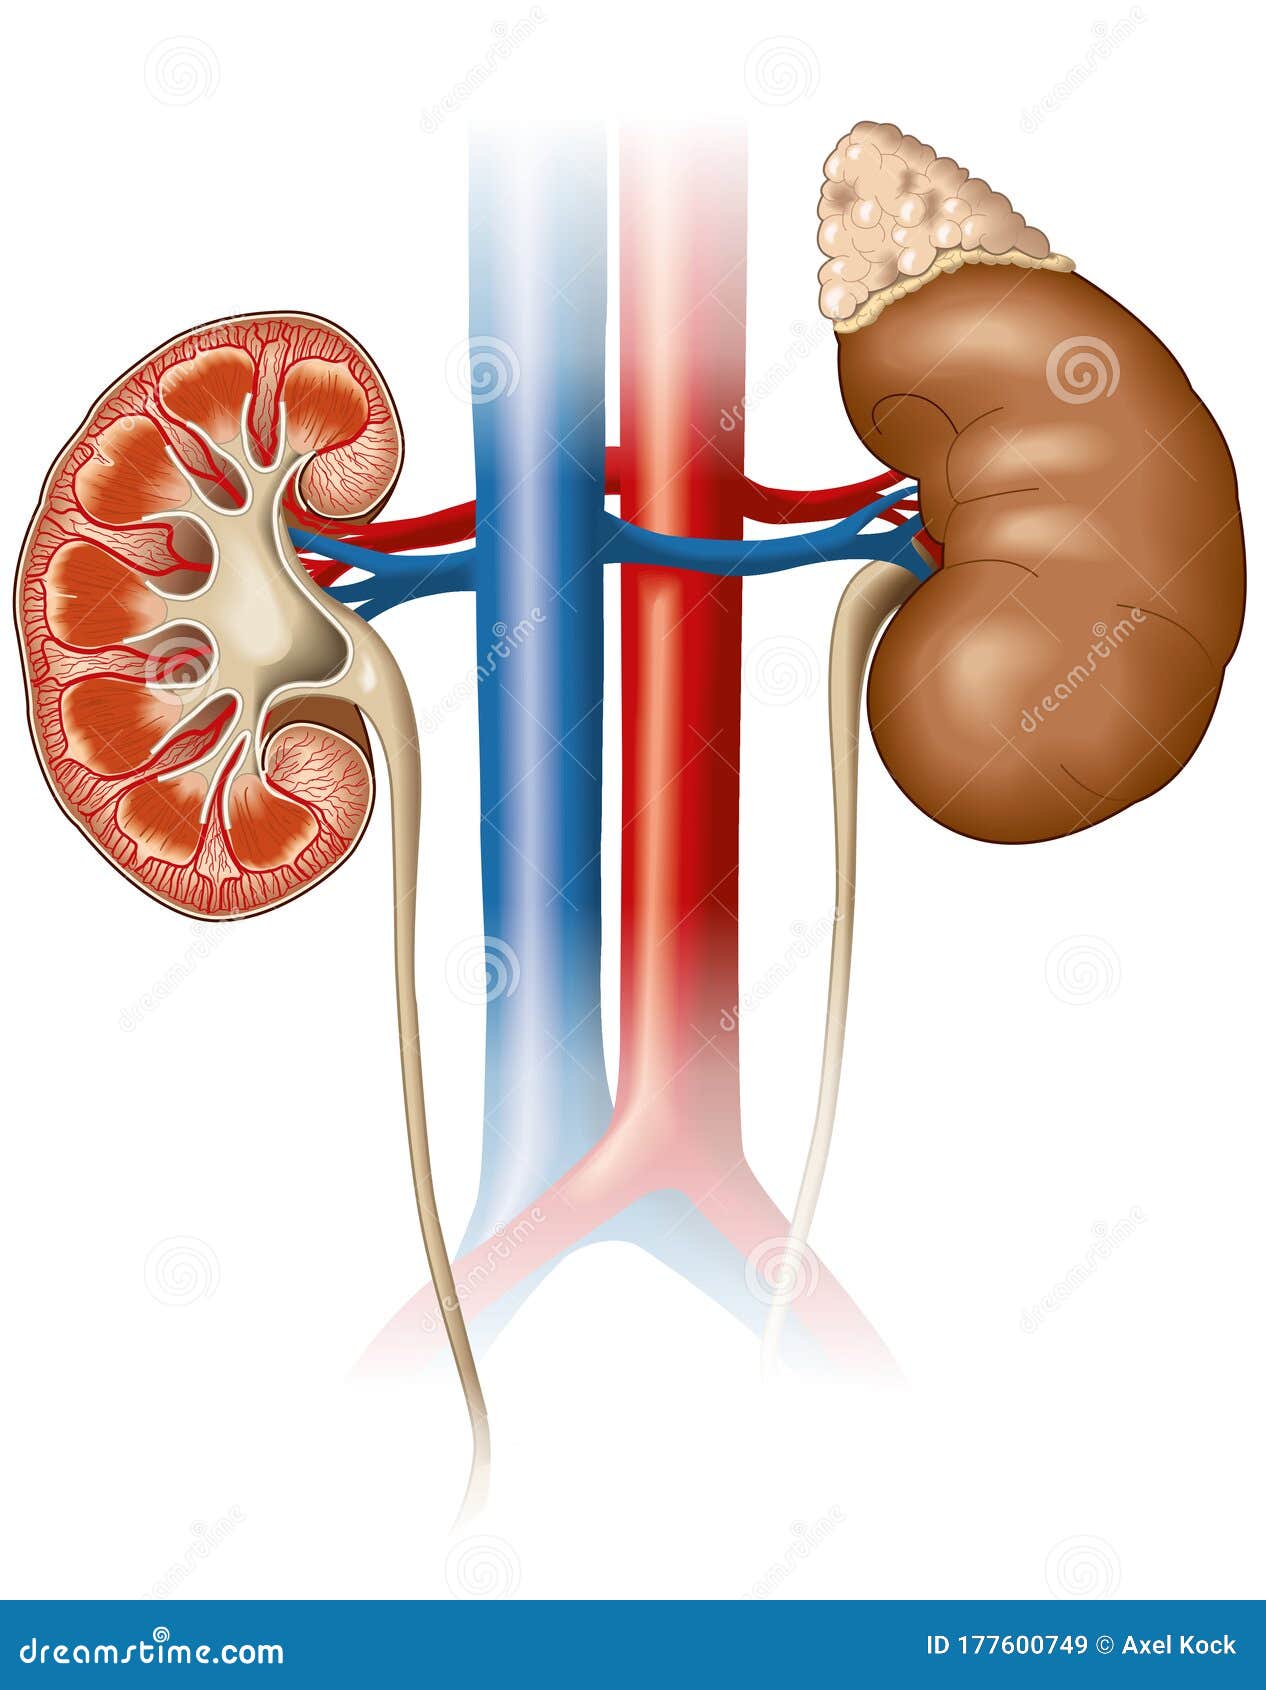 kidneys anatomy, medically 